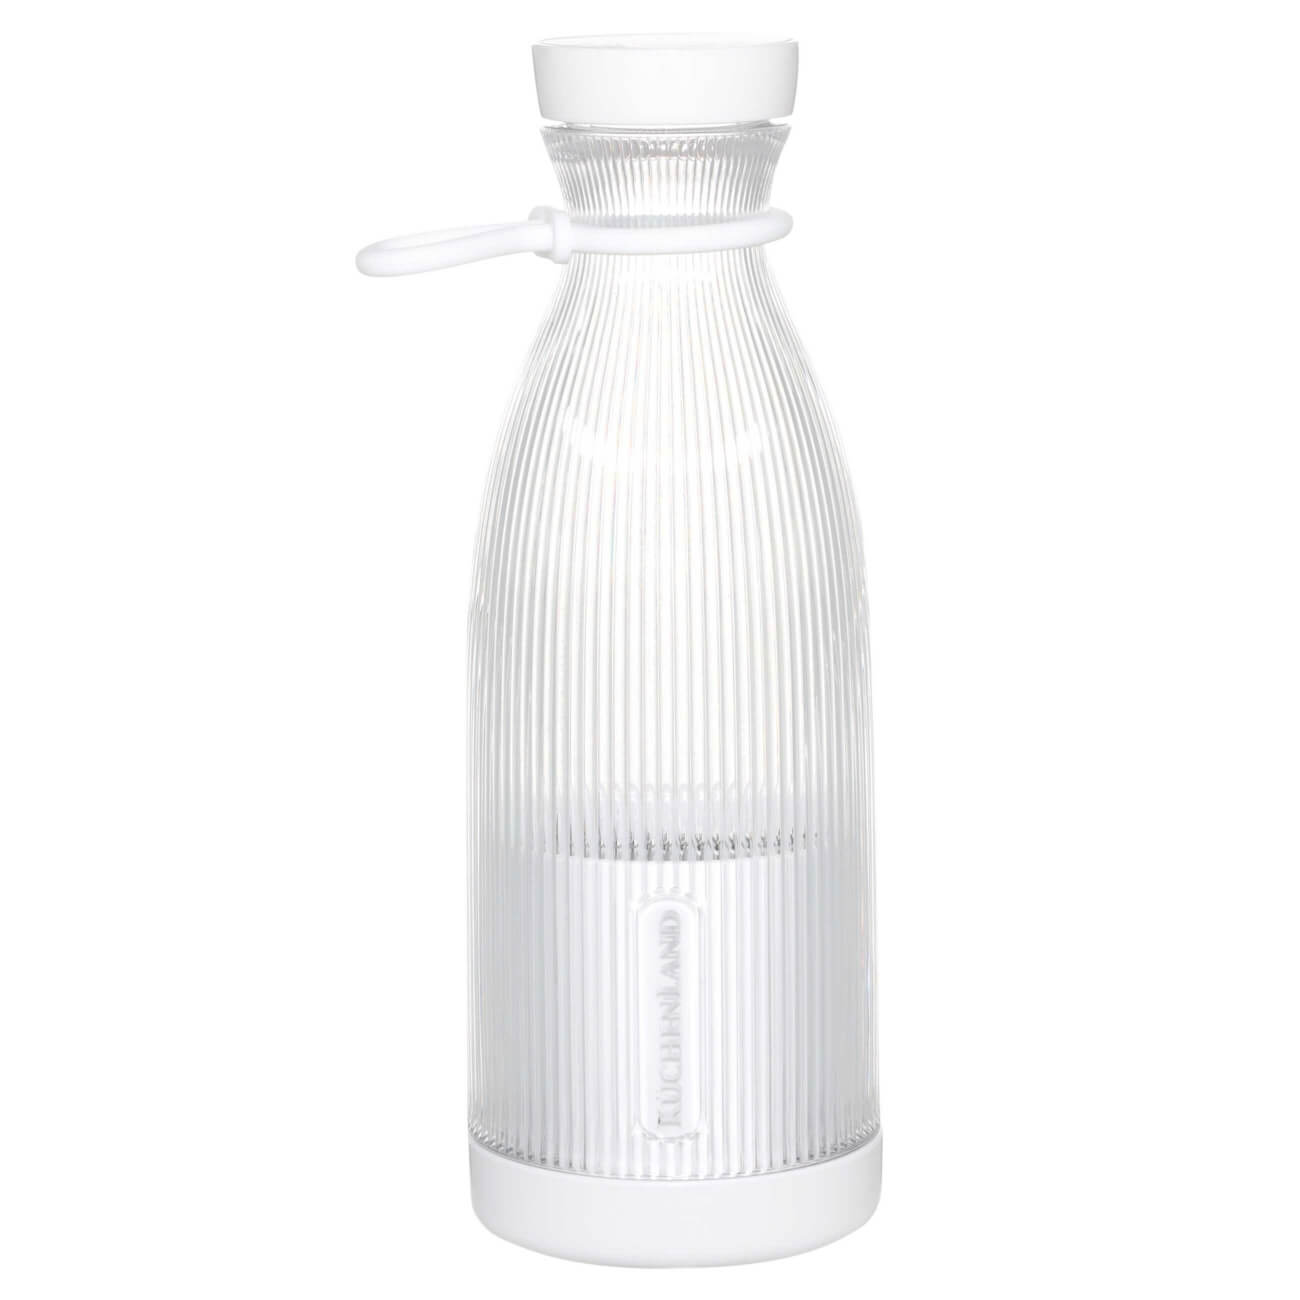 Блендер персональный, 300 мл, портативный, пластик, белый, Бутылка, Ribby кисточка для барбекю силикон пластик